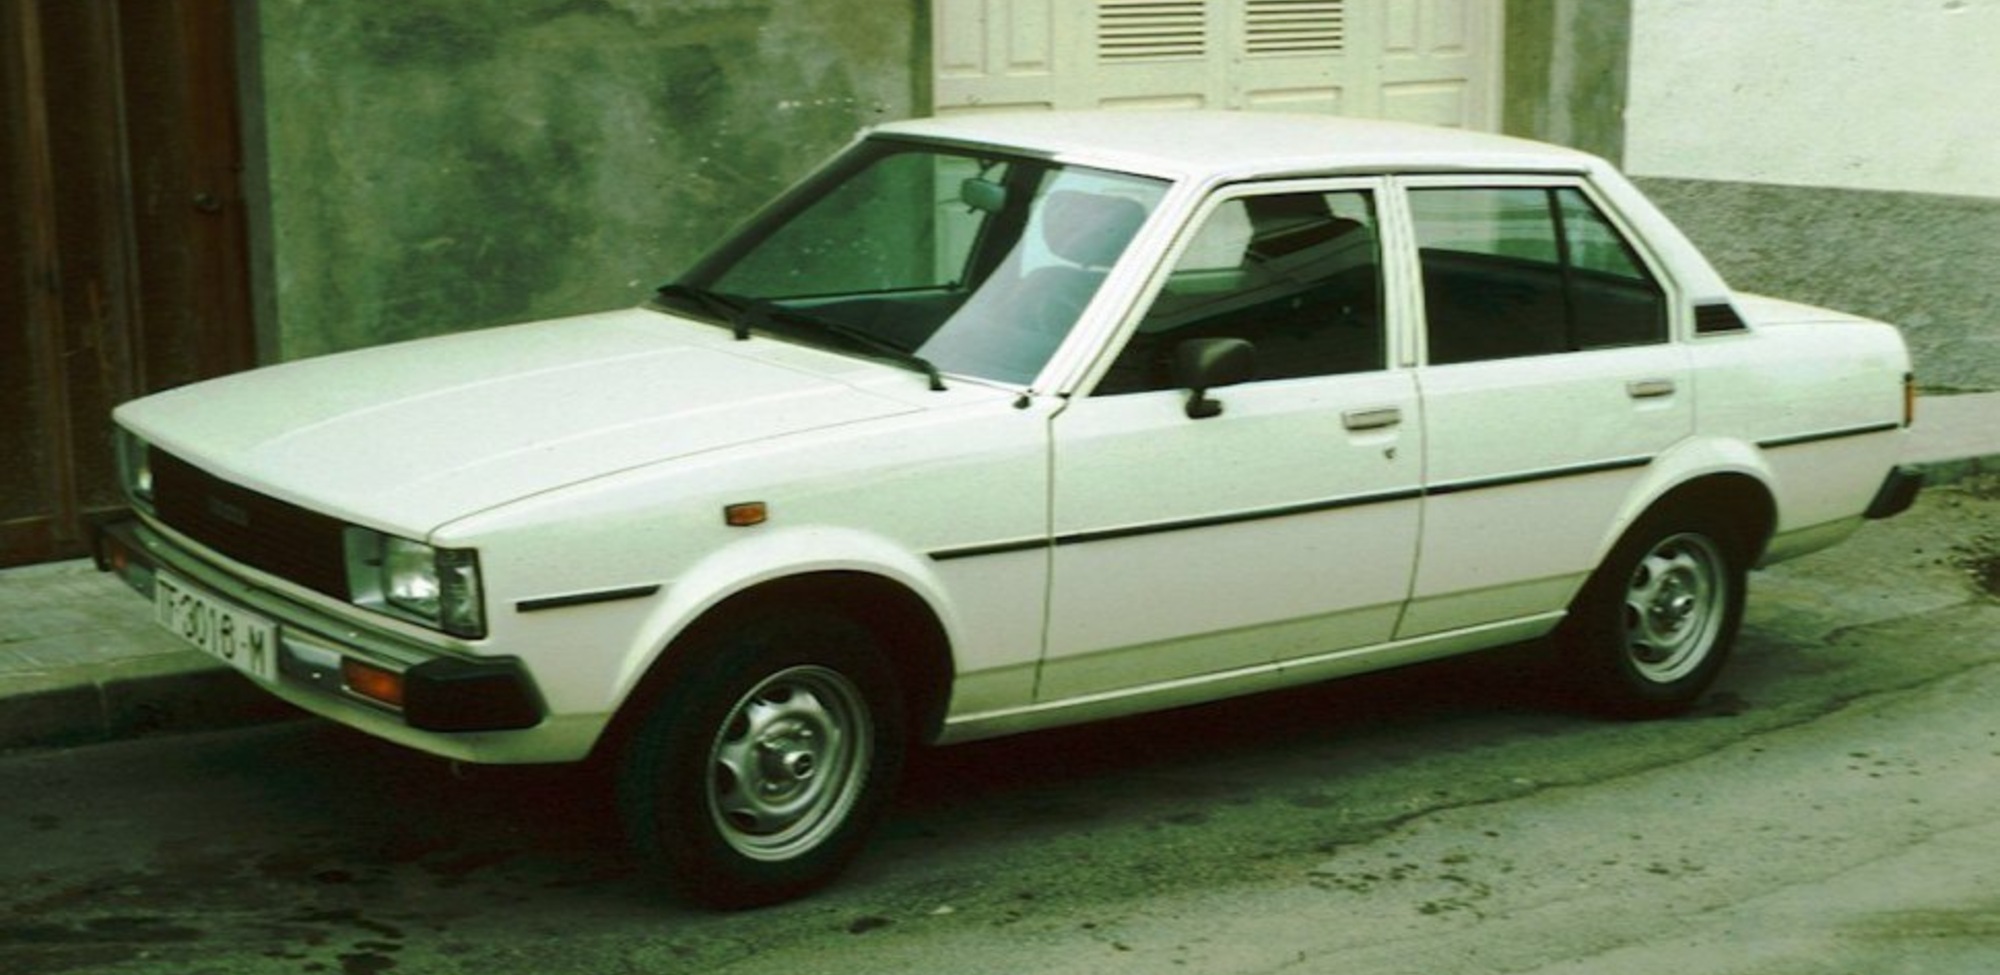 Toyota Corolla IV (E70) 1.3 (KE70) (60 Hp) 1979, 1980, 1981, 1982, 1983 